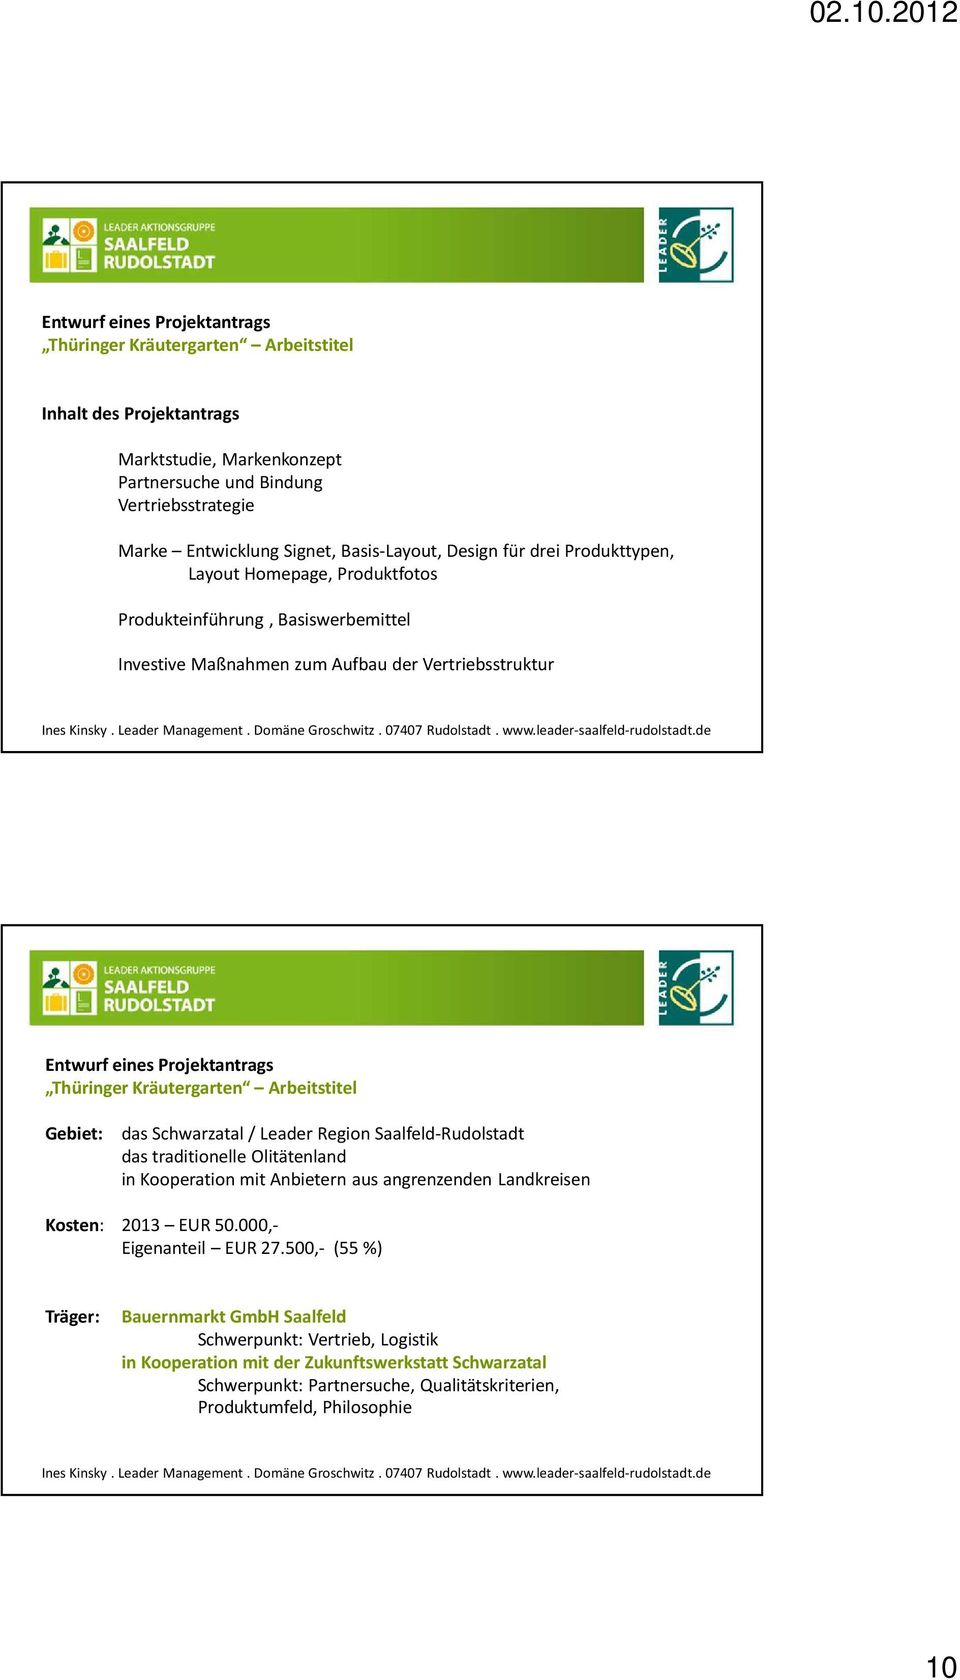 Thüringer Kräutergarten Arbeitstitel Gebiet: das Schwarzatal / Leader Region Saalfeld-Rudolstadt das traditionelle Olitätenland in Kooperation mit Anbietern aus angrenzenden Landkreisen Kosten: 2013